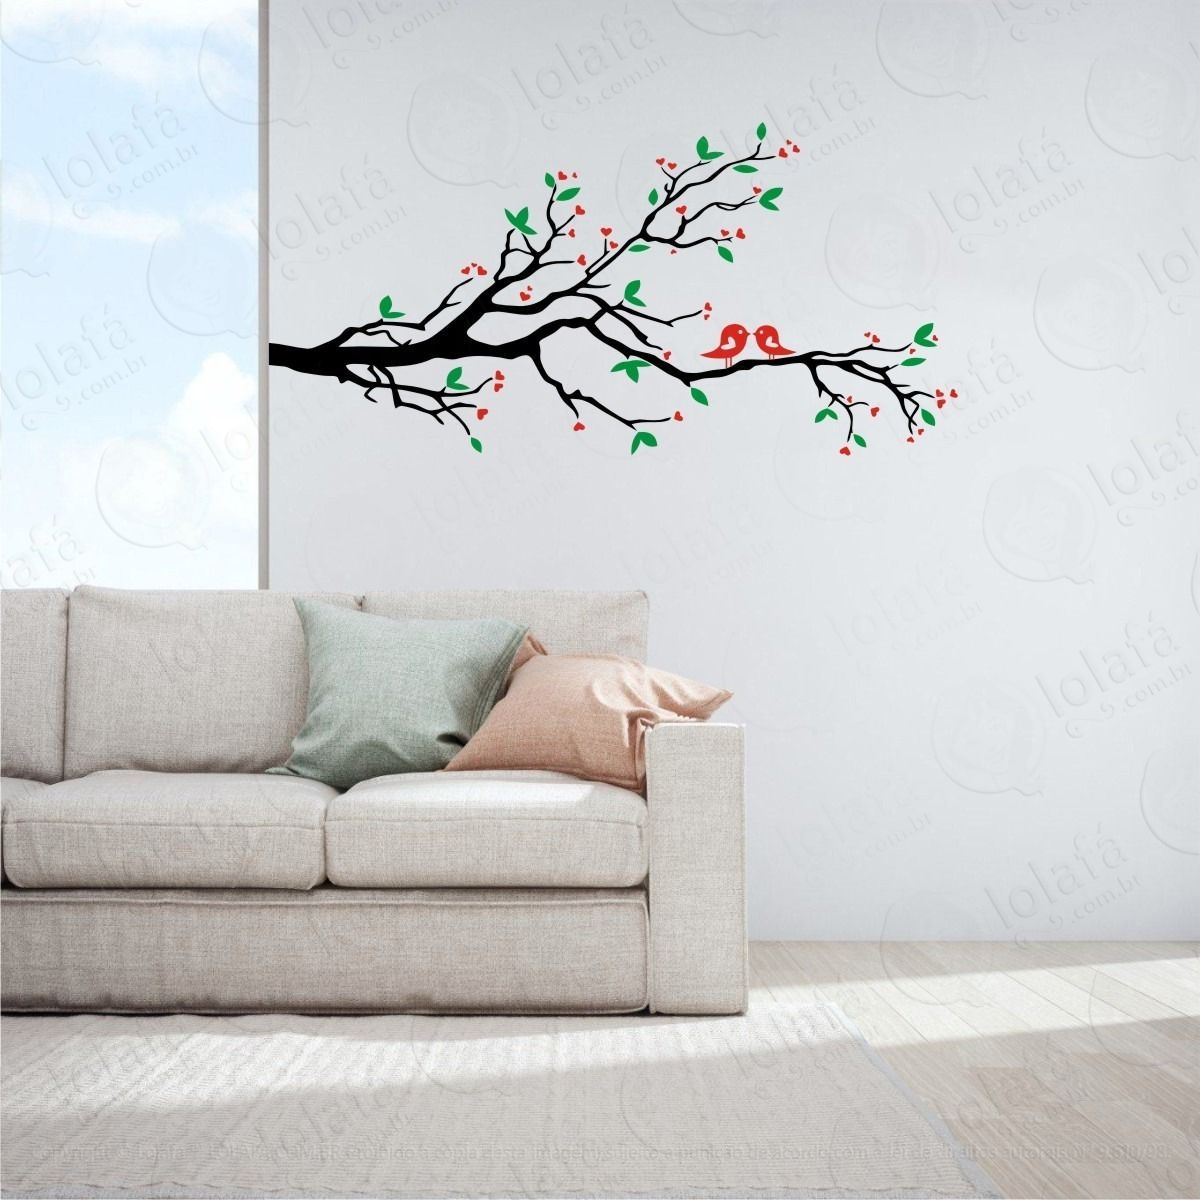 adesivo decorativo de parede galho pássaros Árvore flor mod:907